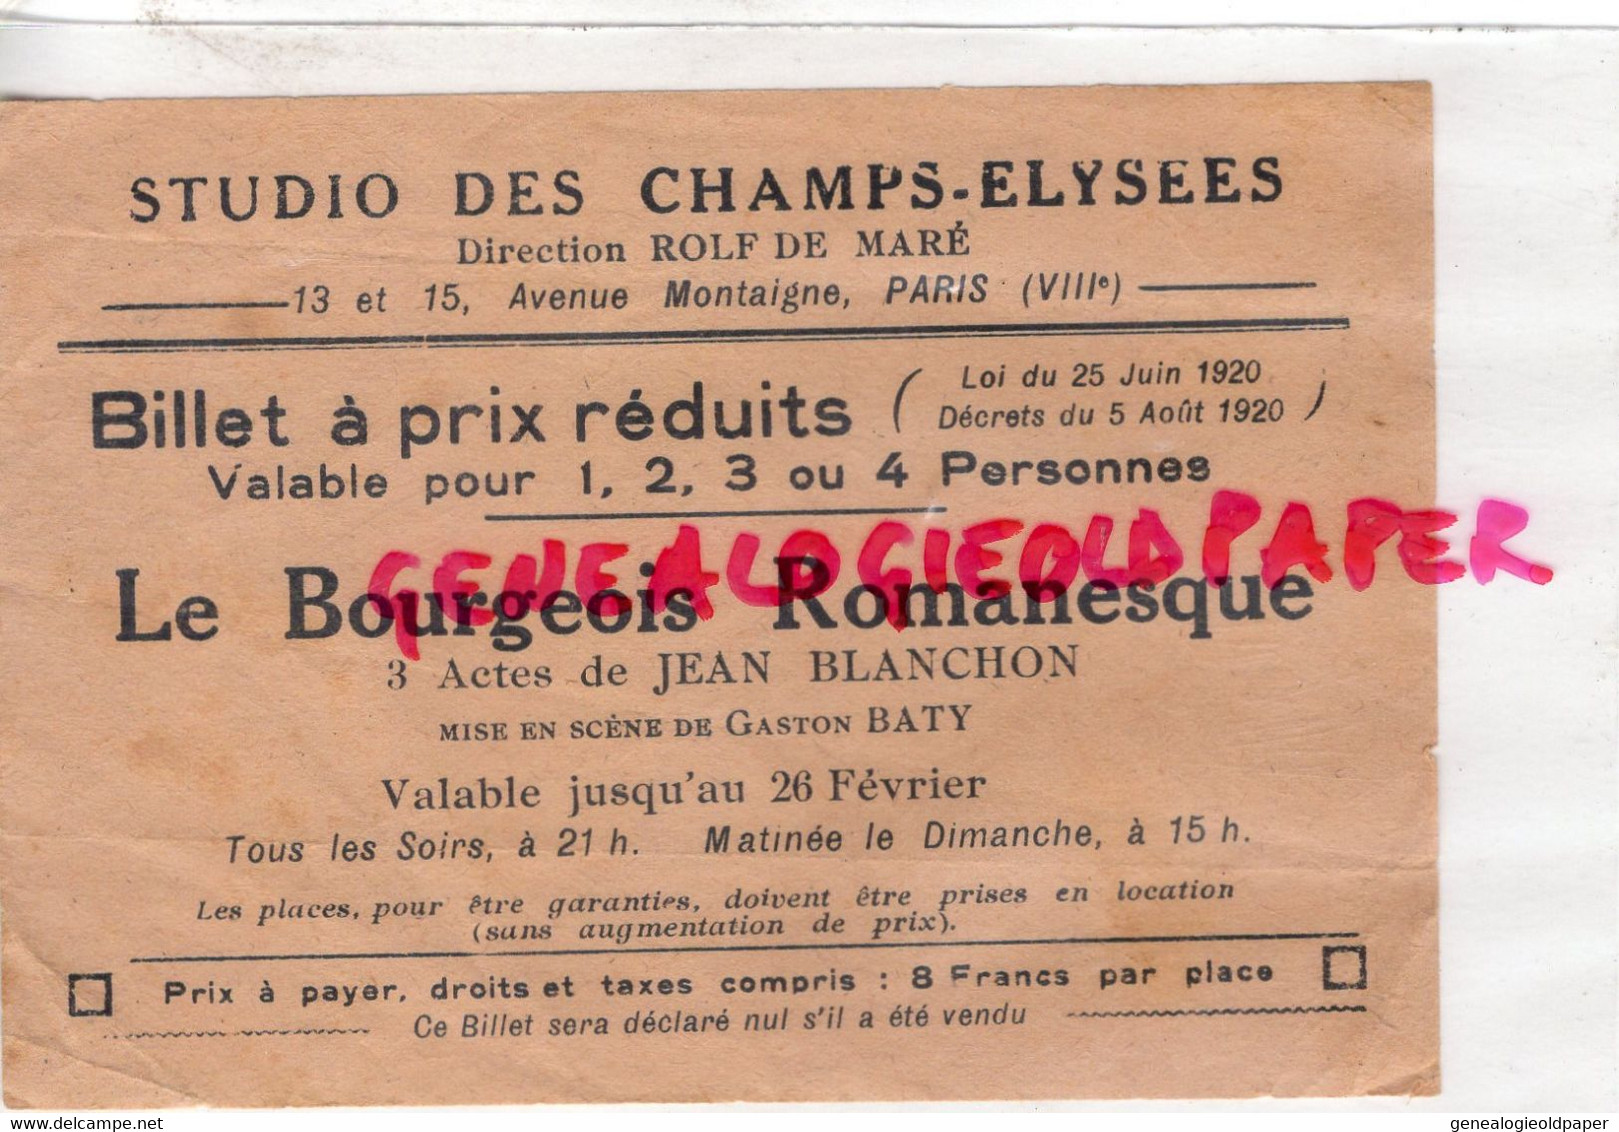 75- PARIS- STUDIO CHAMPS ELYSEES- BILLET LE BOURGEOIS ROMANESQUE-JEAN BLANCHON-GASTON BATY-1920-ROLF DE MARE-MONTAIGNE - Eintrittskarten